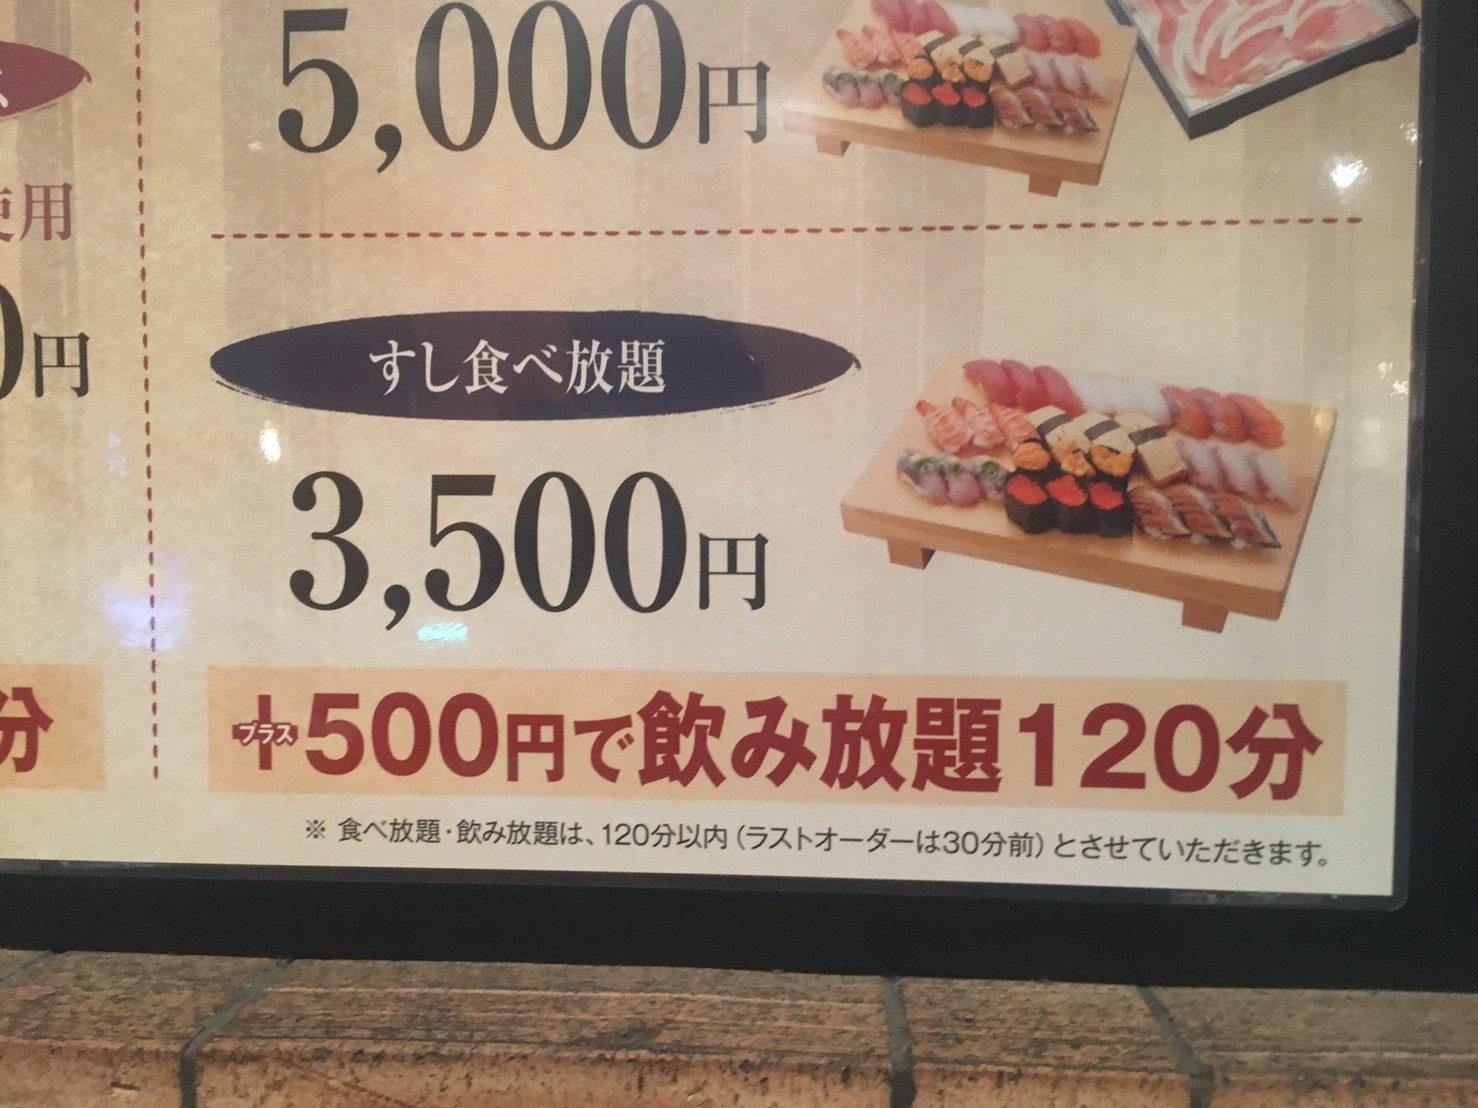 大阪梅田の すしてつ で寿司食べ放題 お得なクーポン ネット予約も マサだよドットコム